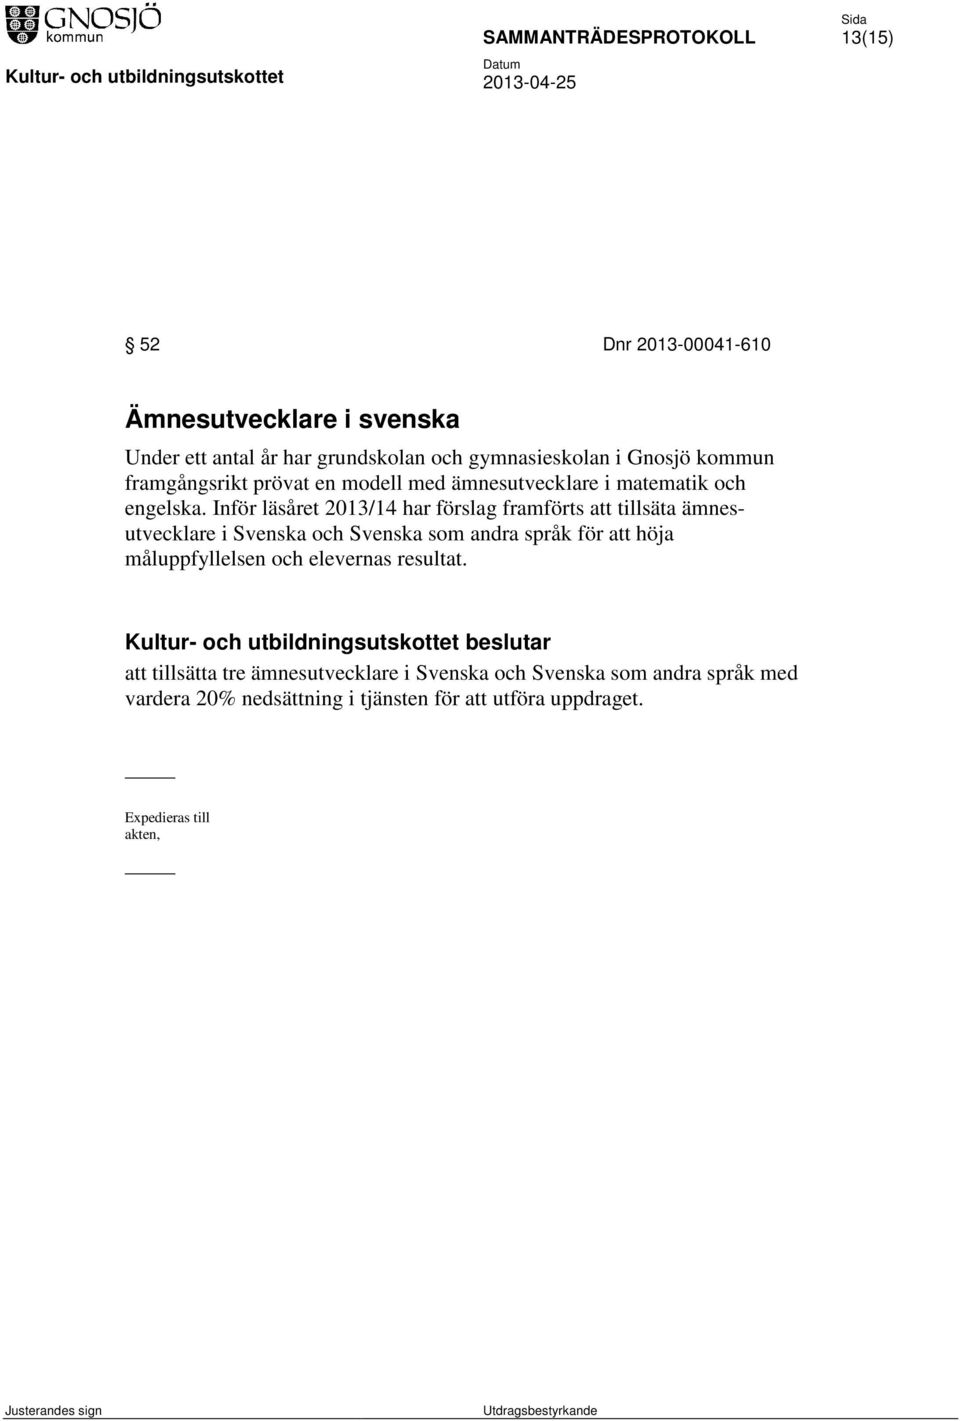 Inför läsåret 2013/14 har förslag framförts att tillsäta ämnesutvecklare i Svenska och Svenska som andra språk för att höja